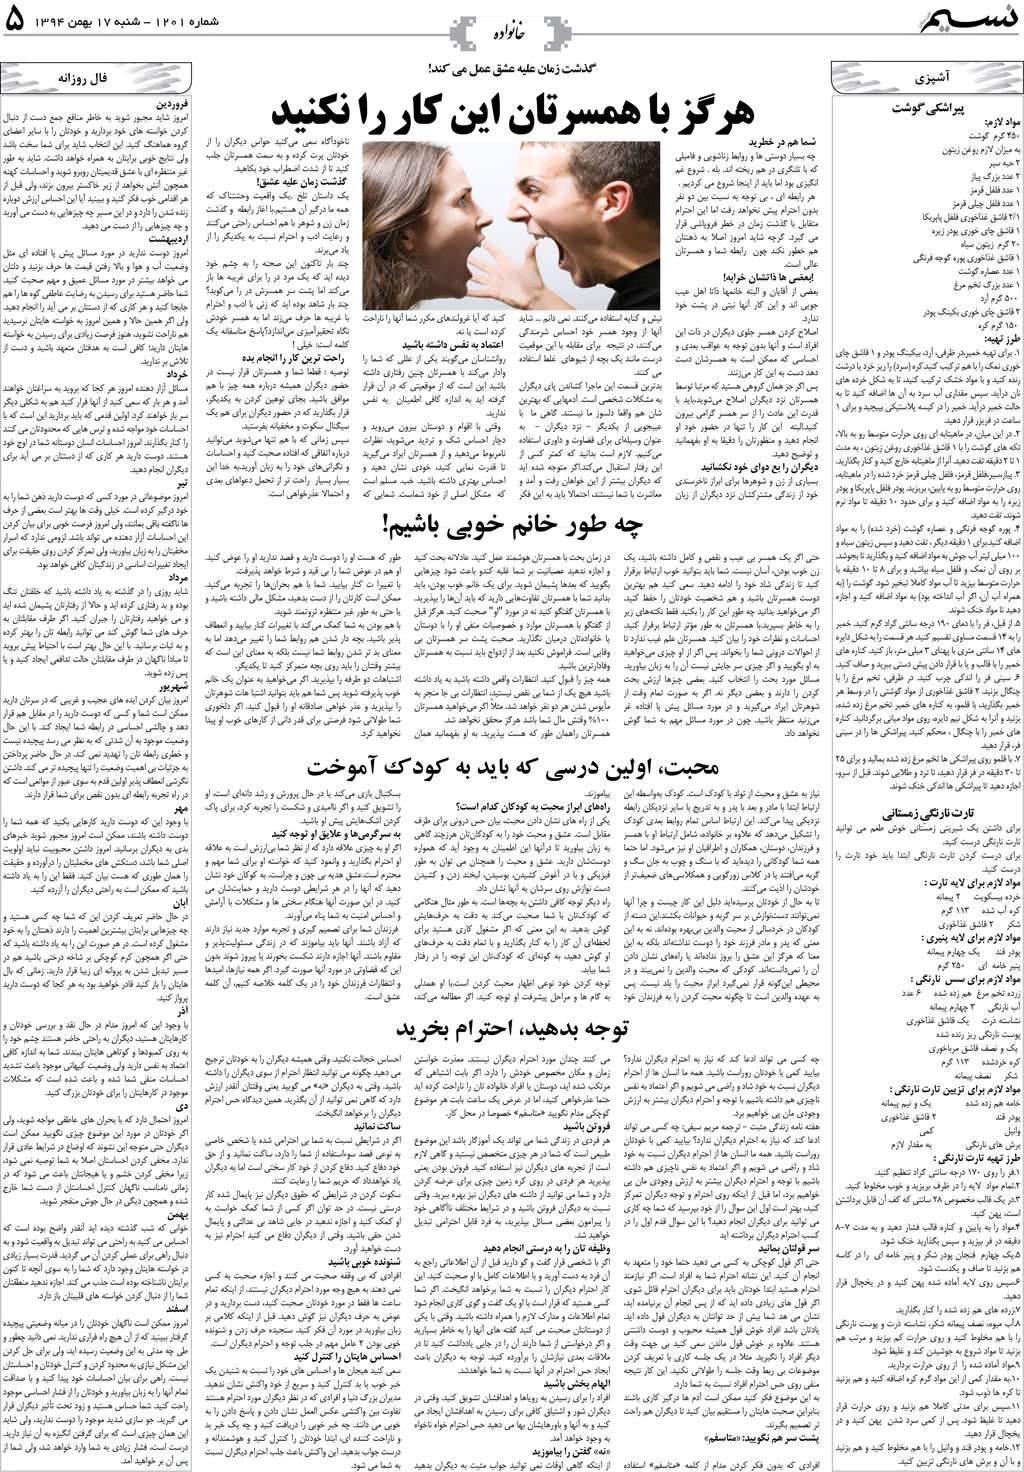 صفحه خانواده روزنامه نسیم شماره 1201